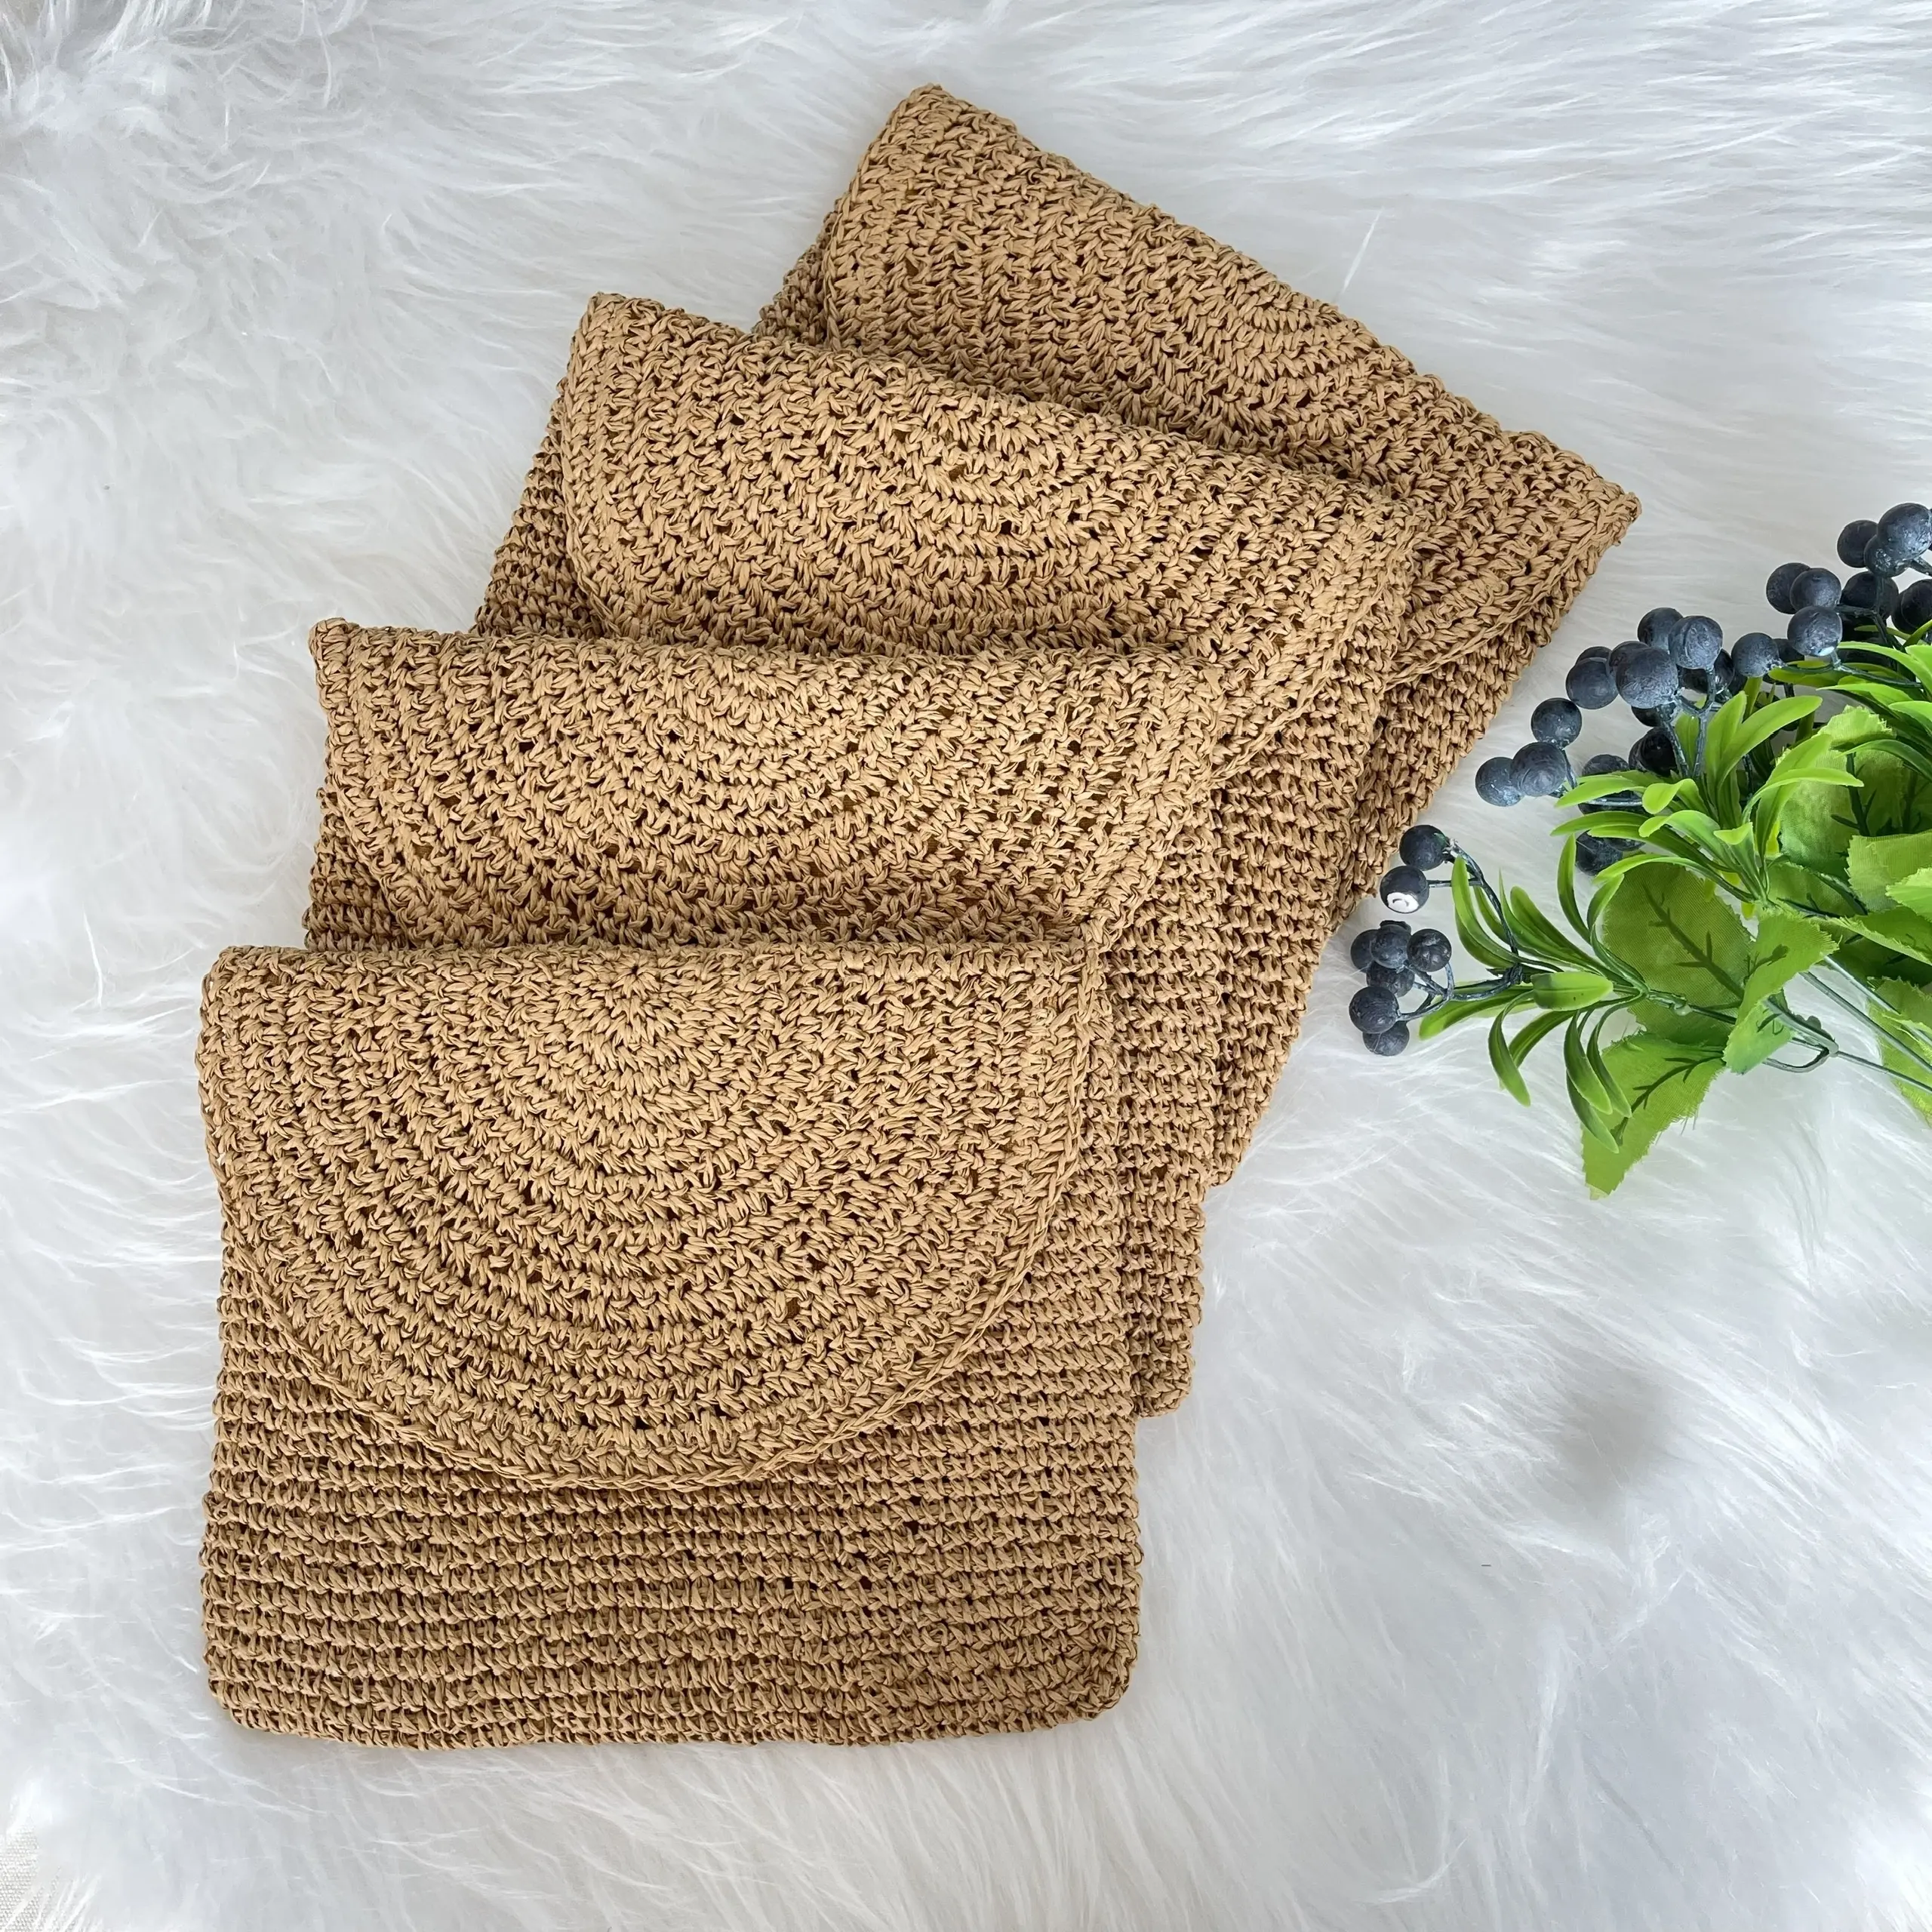 Hot Selling Online! Natural Hand Knit Raffia Fiber Shoulder Bag with Long Strap Tote Bag from Manufacturer